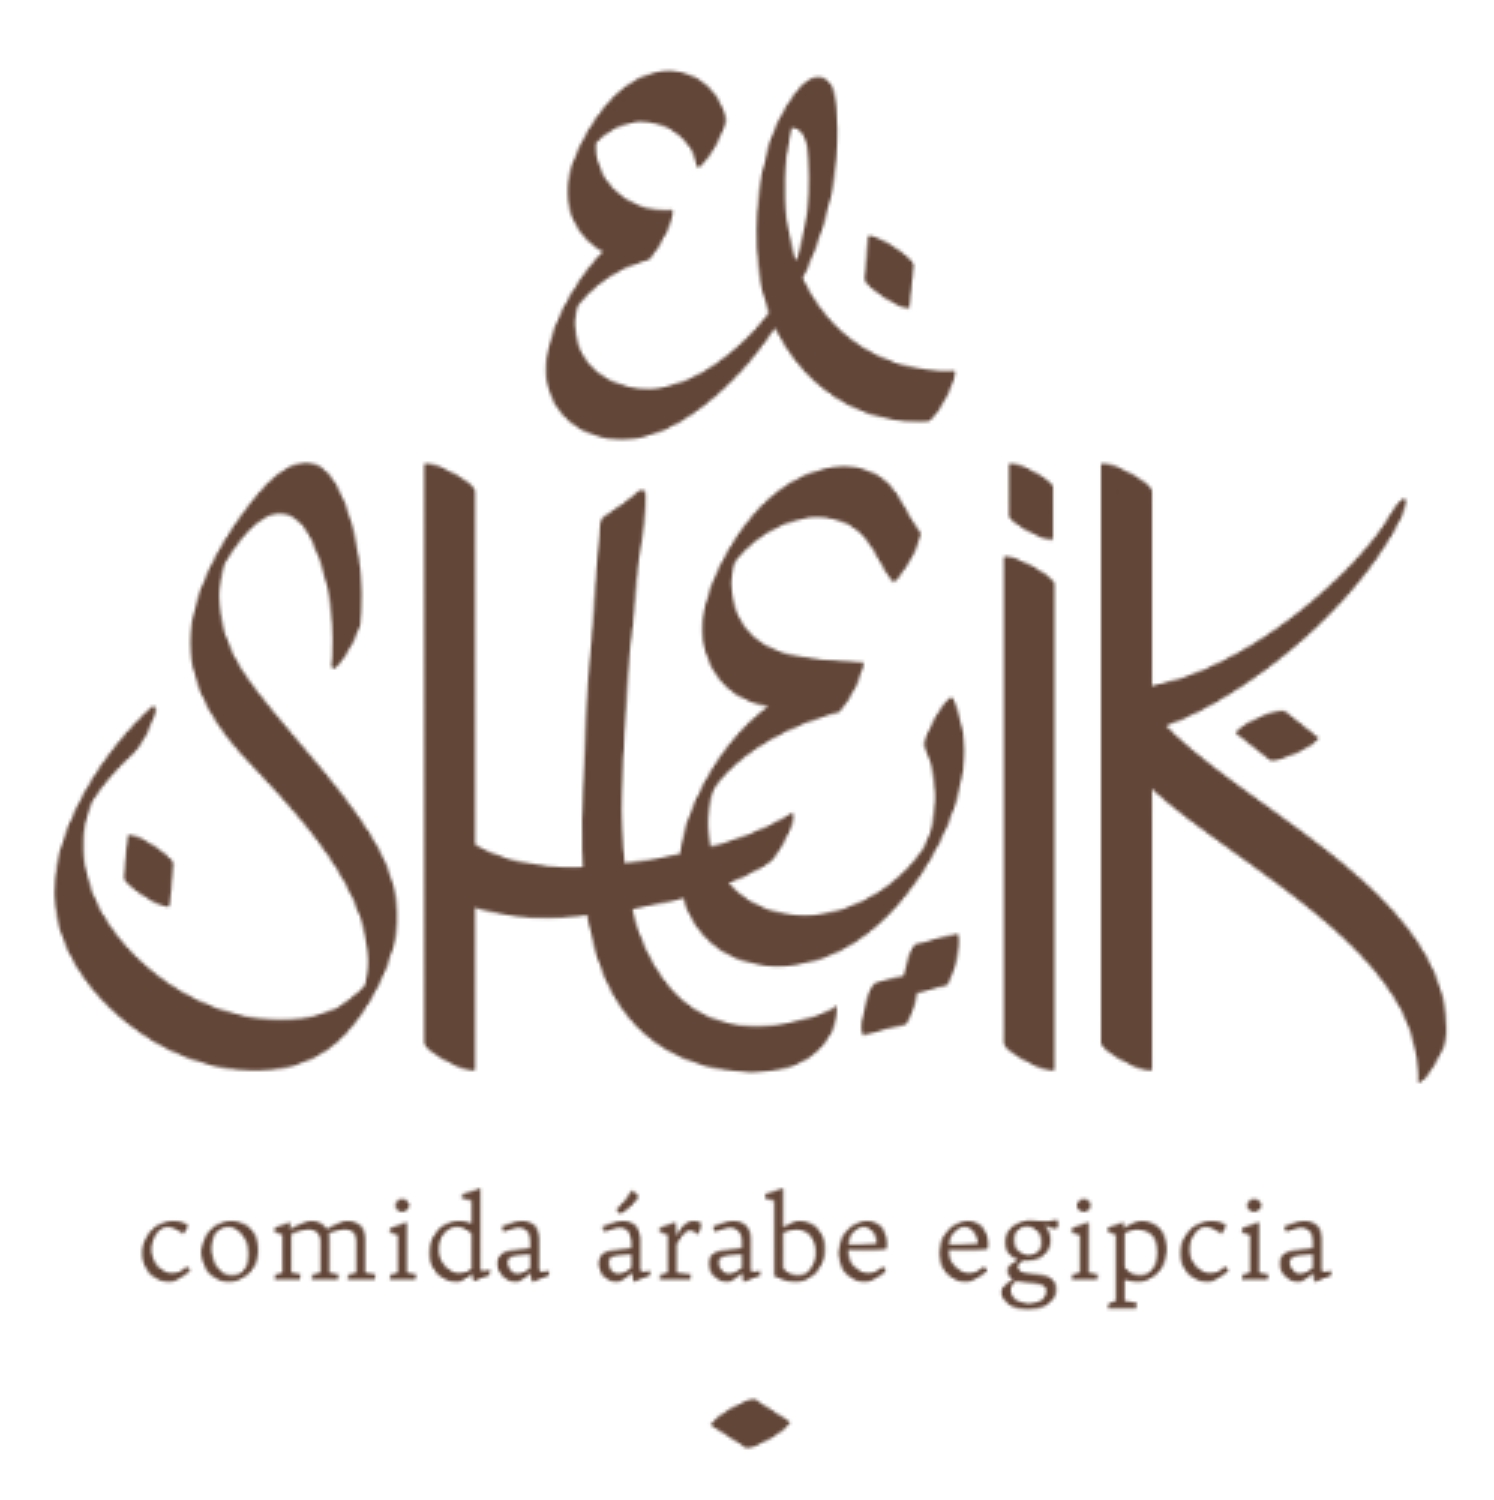 El Sheik